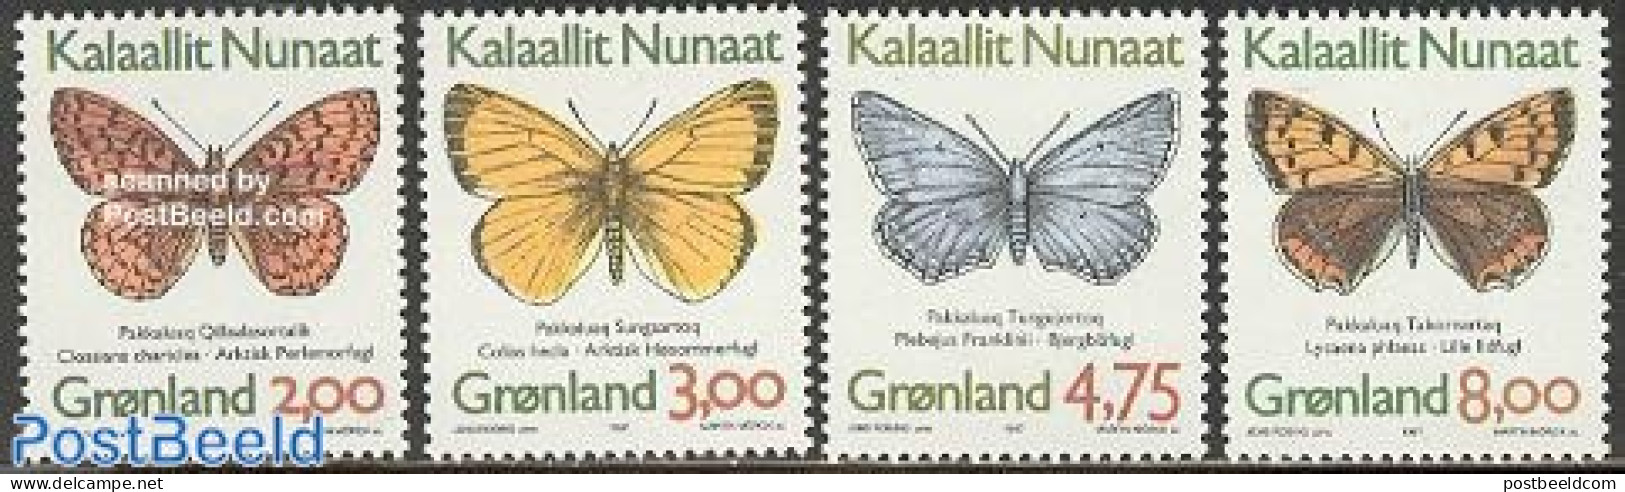 Greenland 1997 Butterflies 4v, Normal Paper (from Booklet), Mint NH, Nature - Butterflies - Ongebruikt